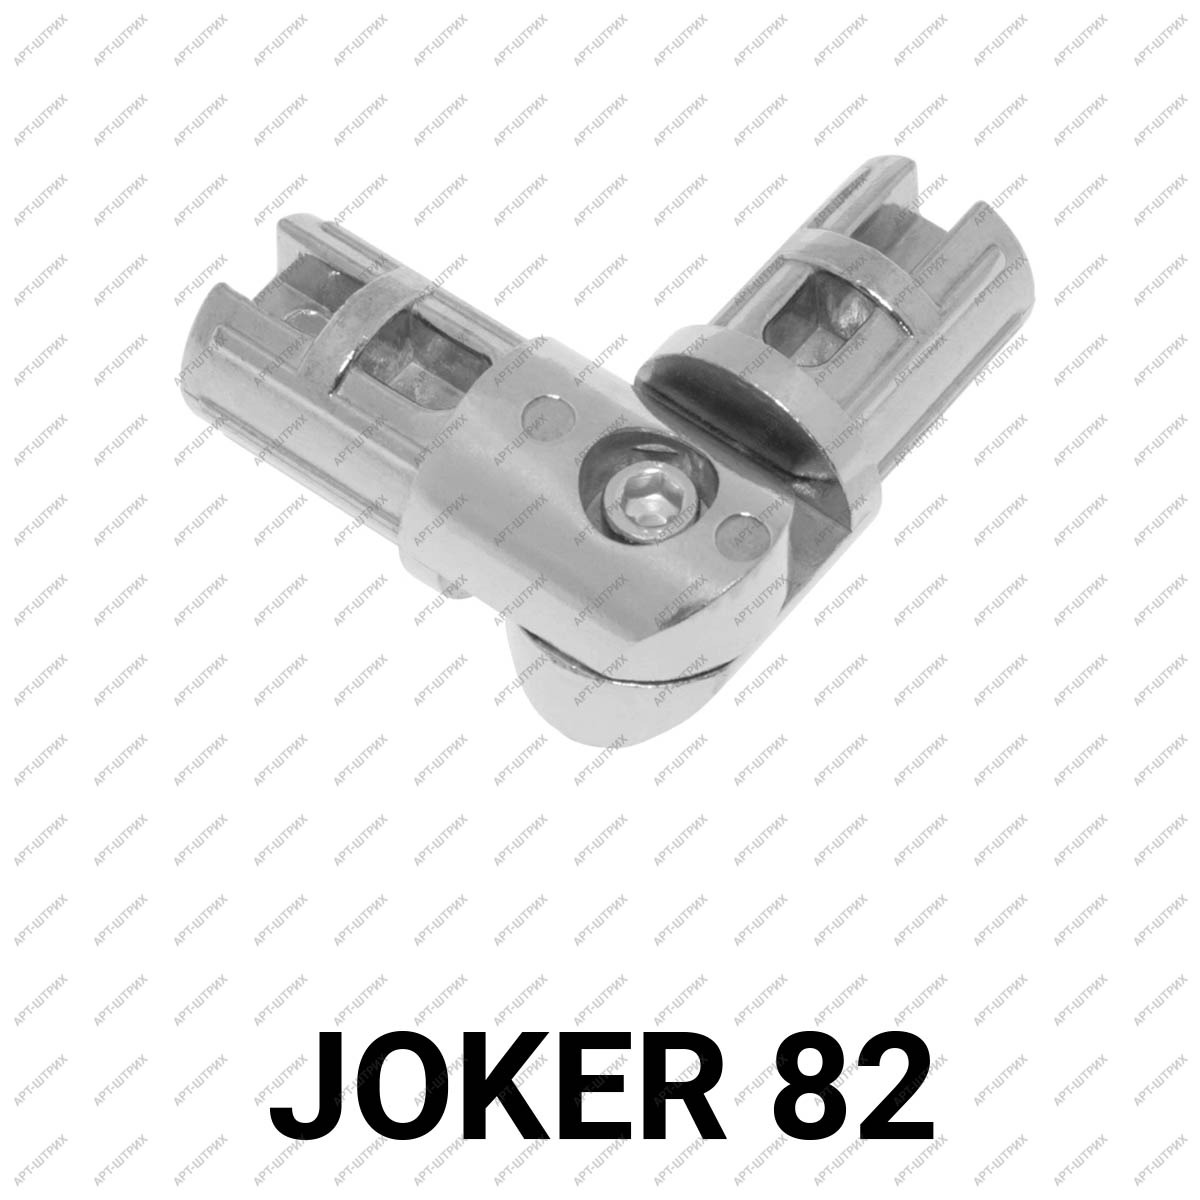 Joker 82 Крепеж соединитель поворотный